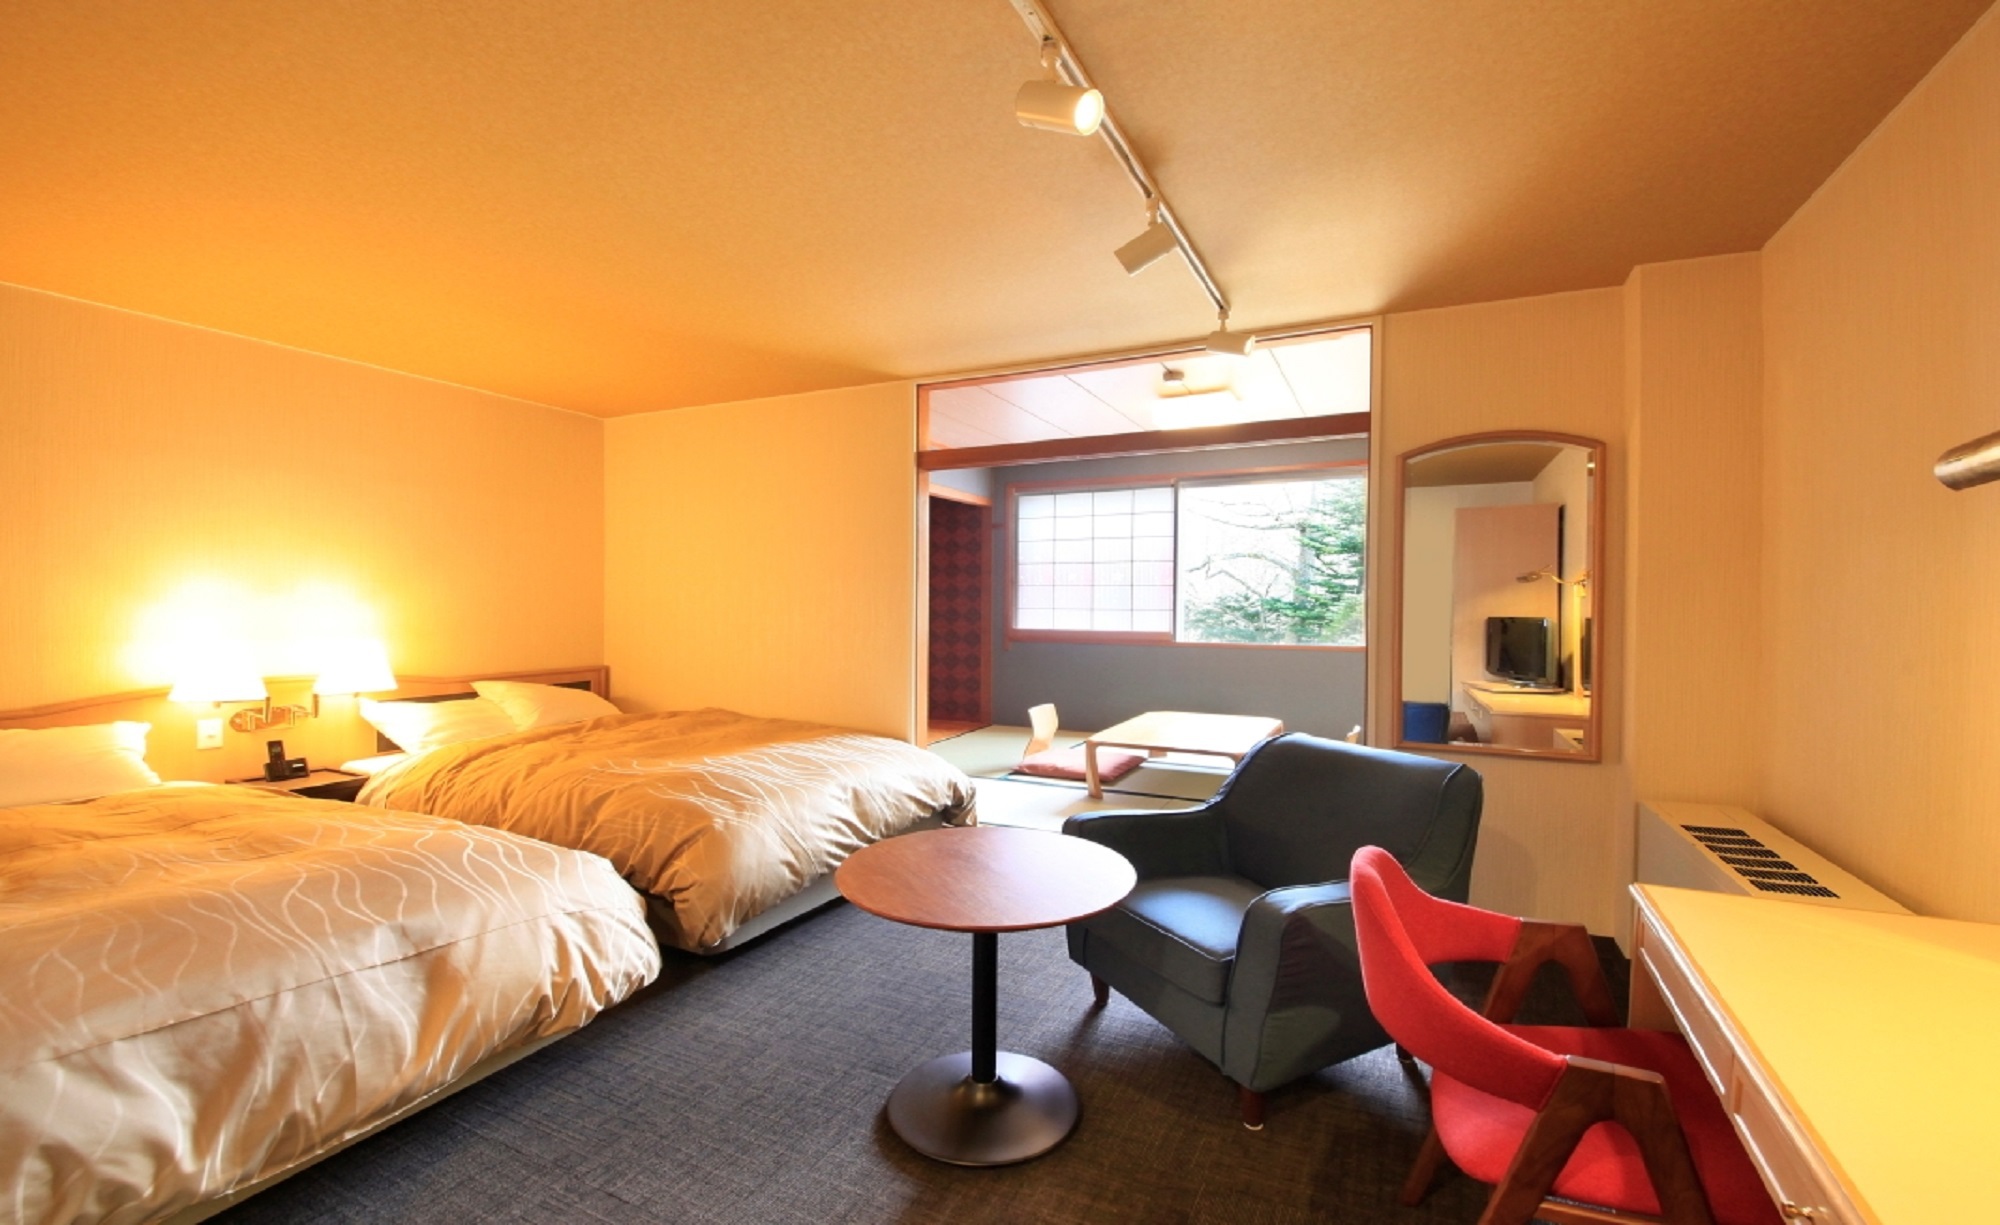 「和洋室」軽井沢では珍しい和洋室タイプのお部屋です。